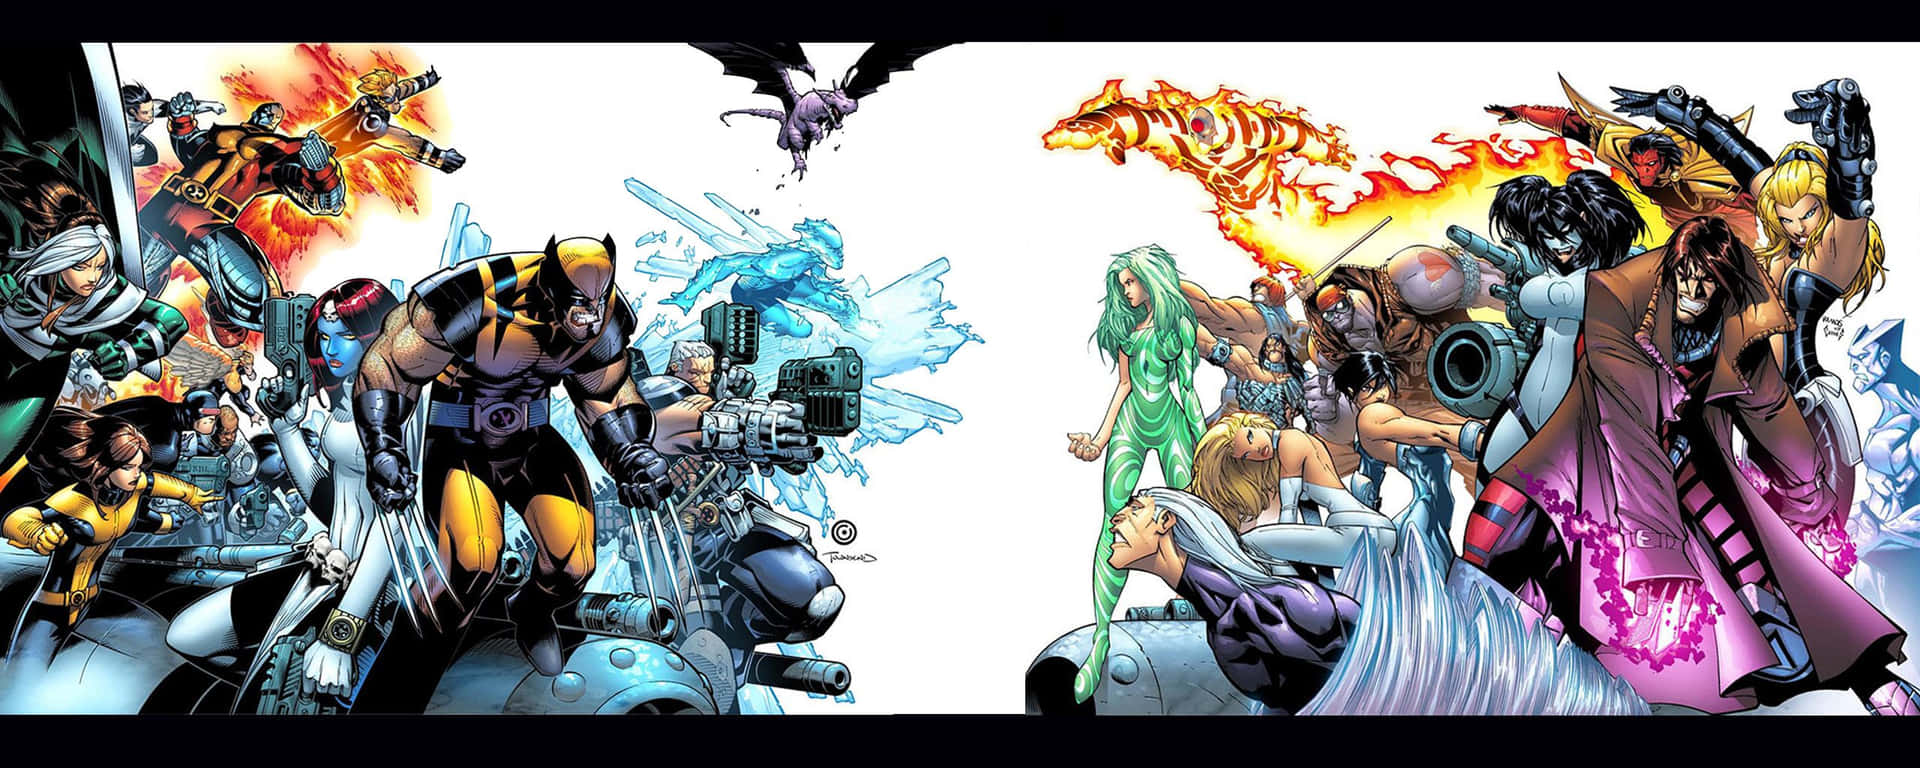 Umgrupo De Personagens De Quadrinhos É Exibido Em Um Livro De Quadrinhos. Papel de Parede